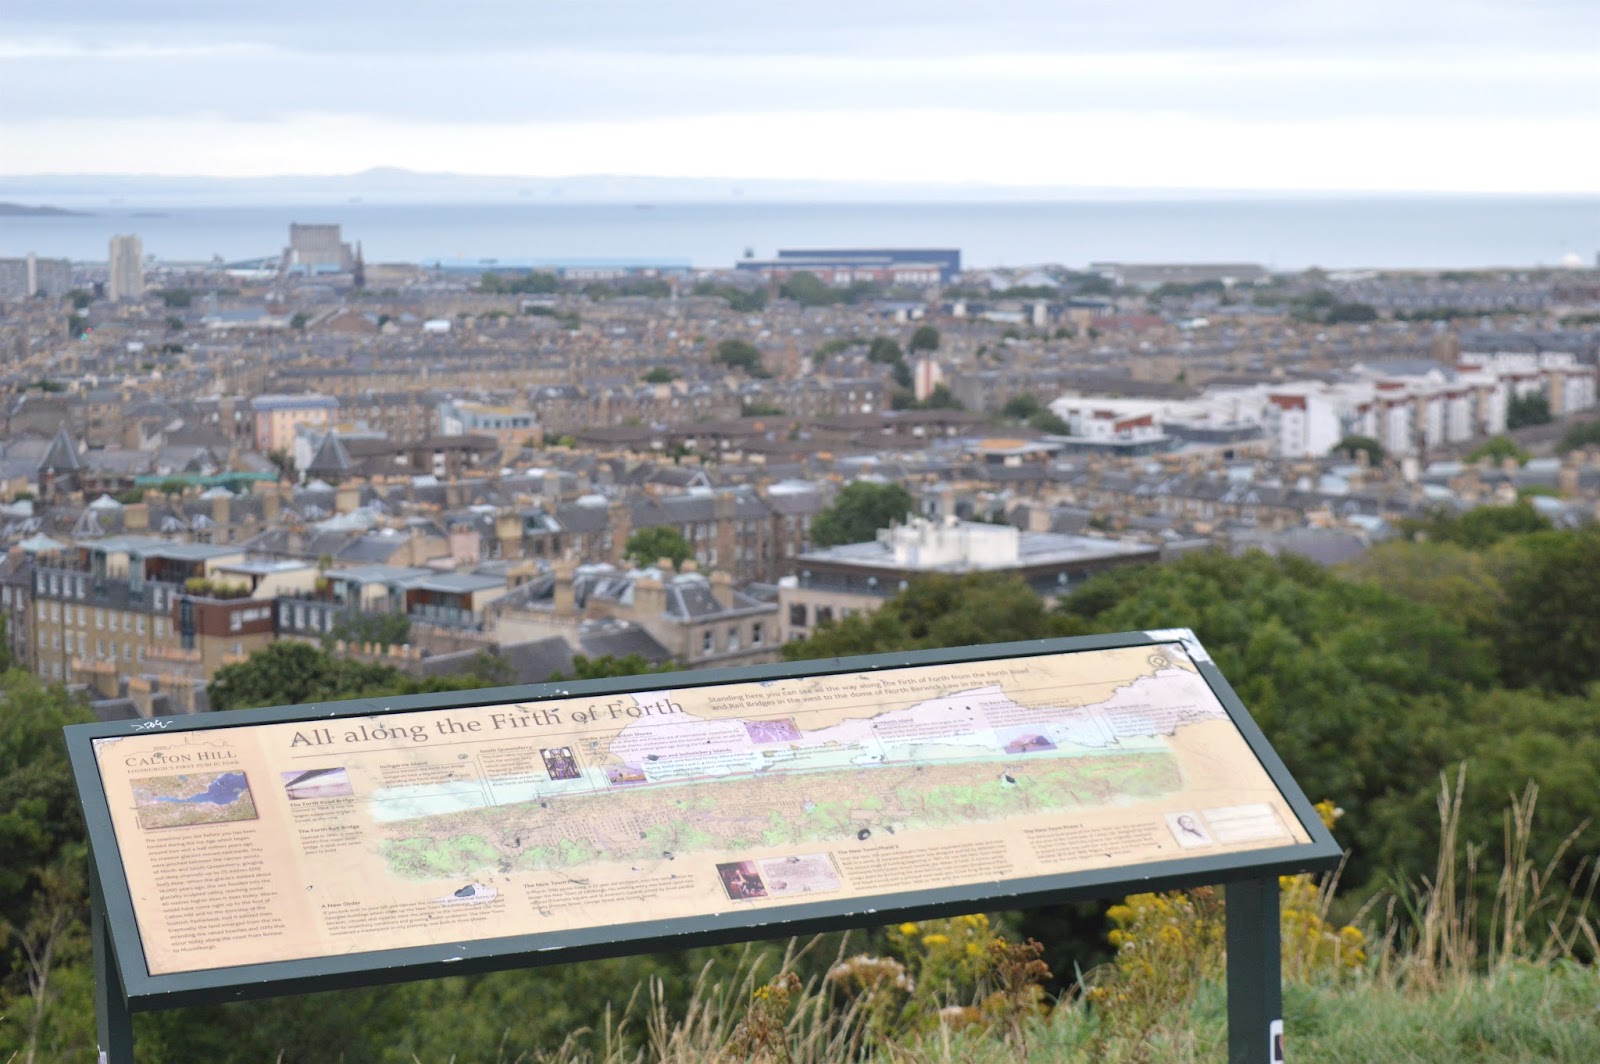 Calton Hill View of Edinburgh